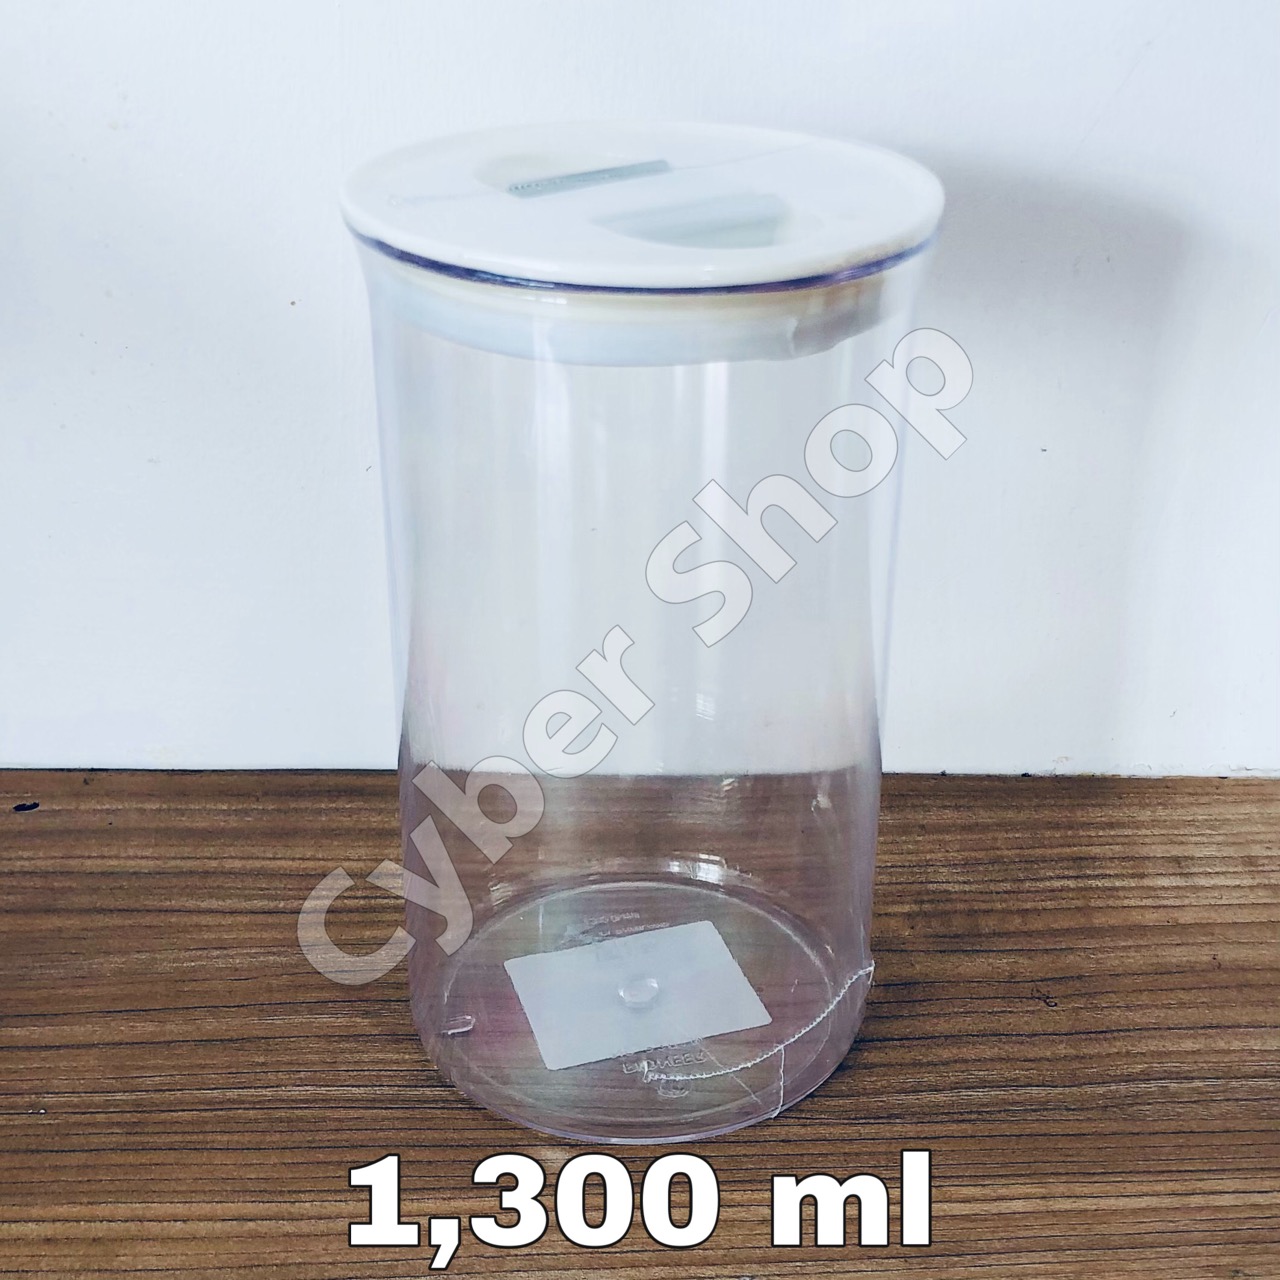 Pioneer Plastic ราคาถูก ซื้อออนไลน์ที่ - พ.ค. 2022 | Lazada.co.th